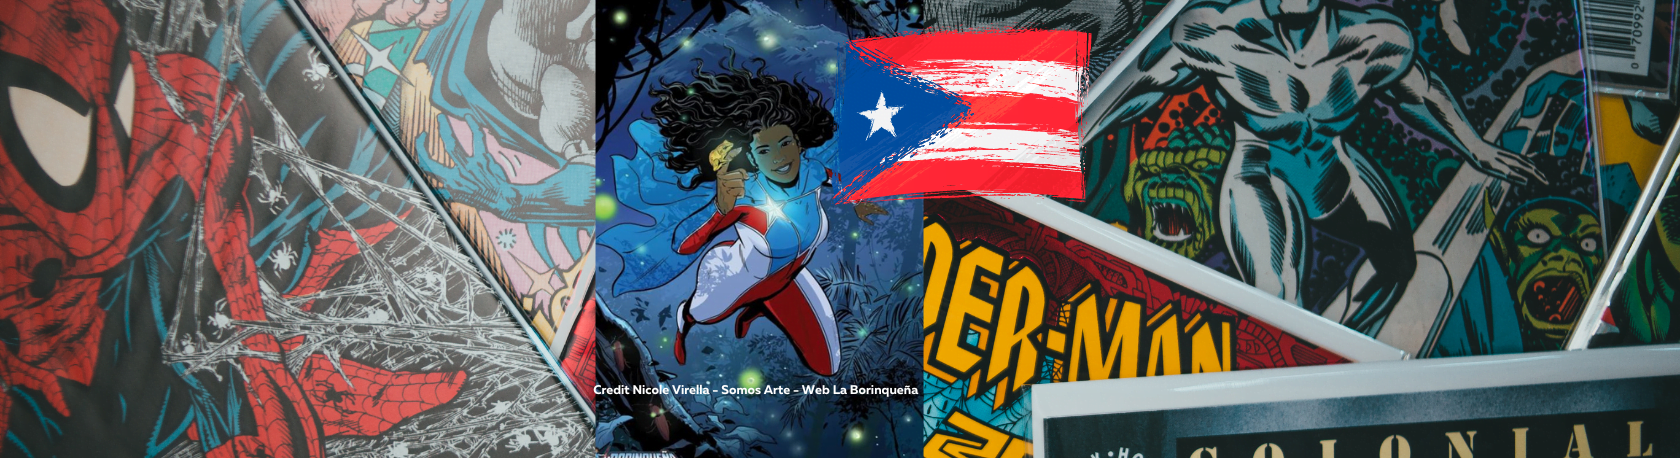 ¿Sabías que Puerto Rico tiene su propia heroína de historietas llamada La Boriqueña? - Easy Español